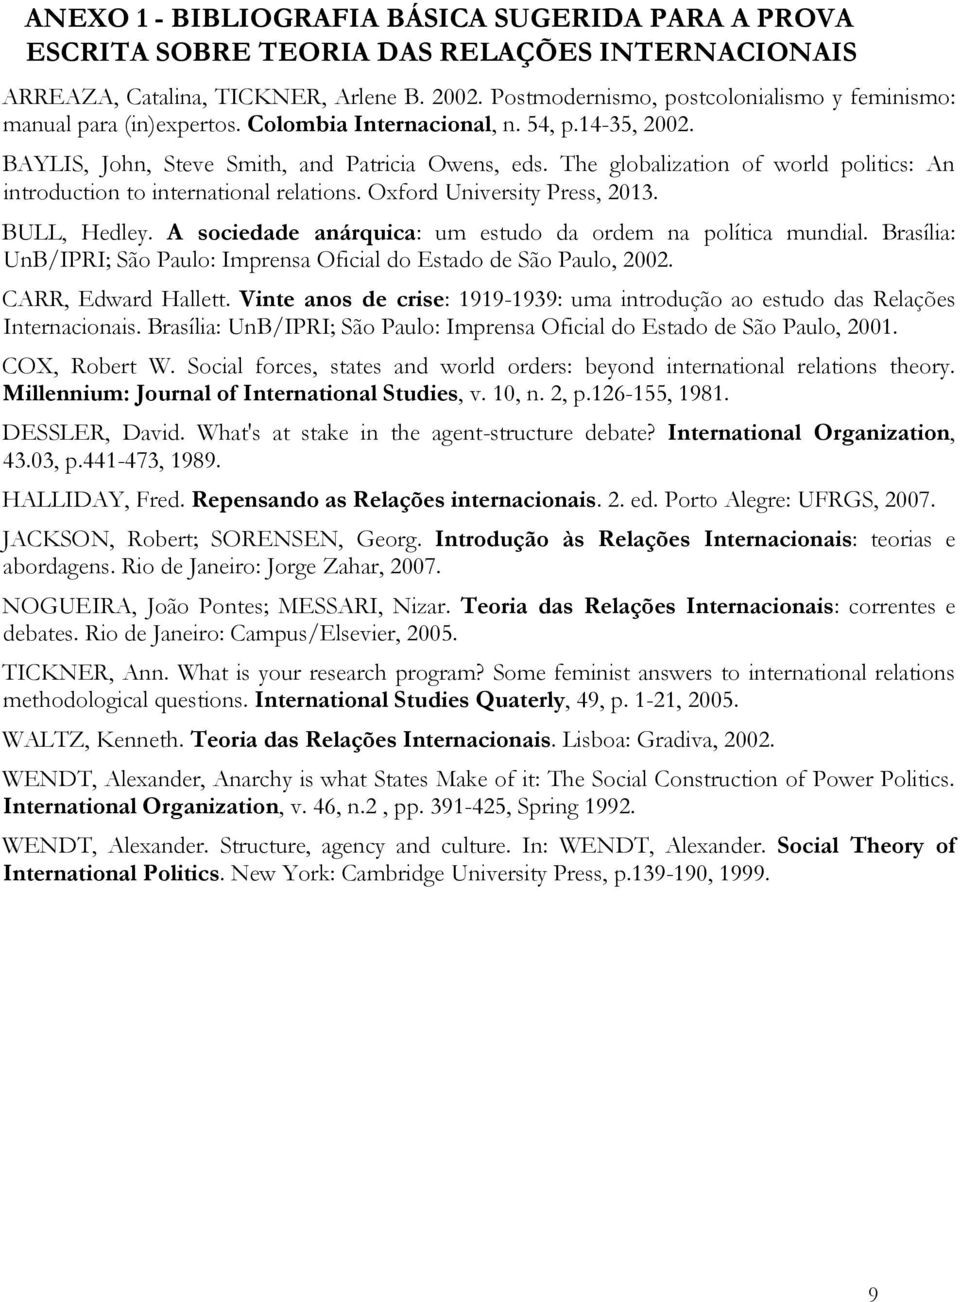 The globalization of world politics: An introduction to international relations. Oxford University Press, 2013. BULL, Hedley. A sociedade anárquica: um estudo da ordem na política mundial.